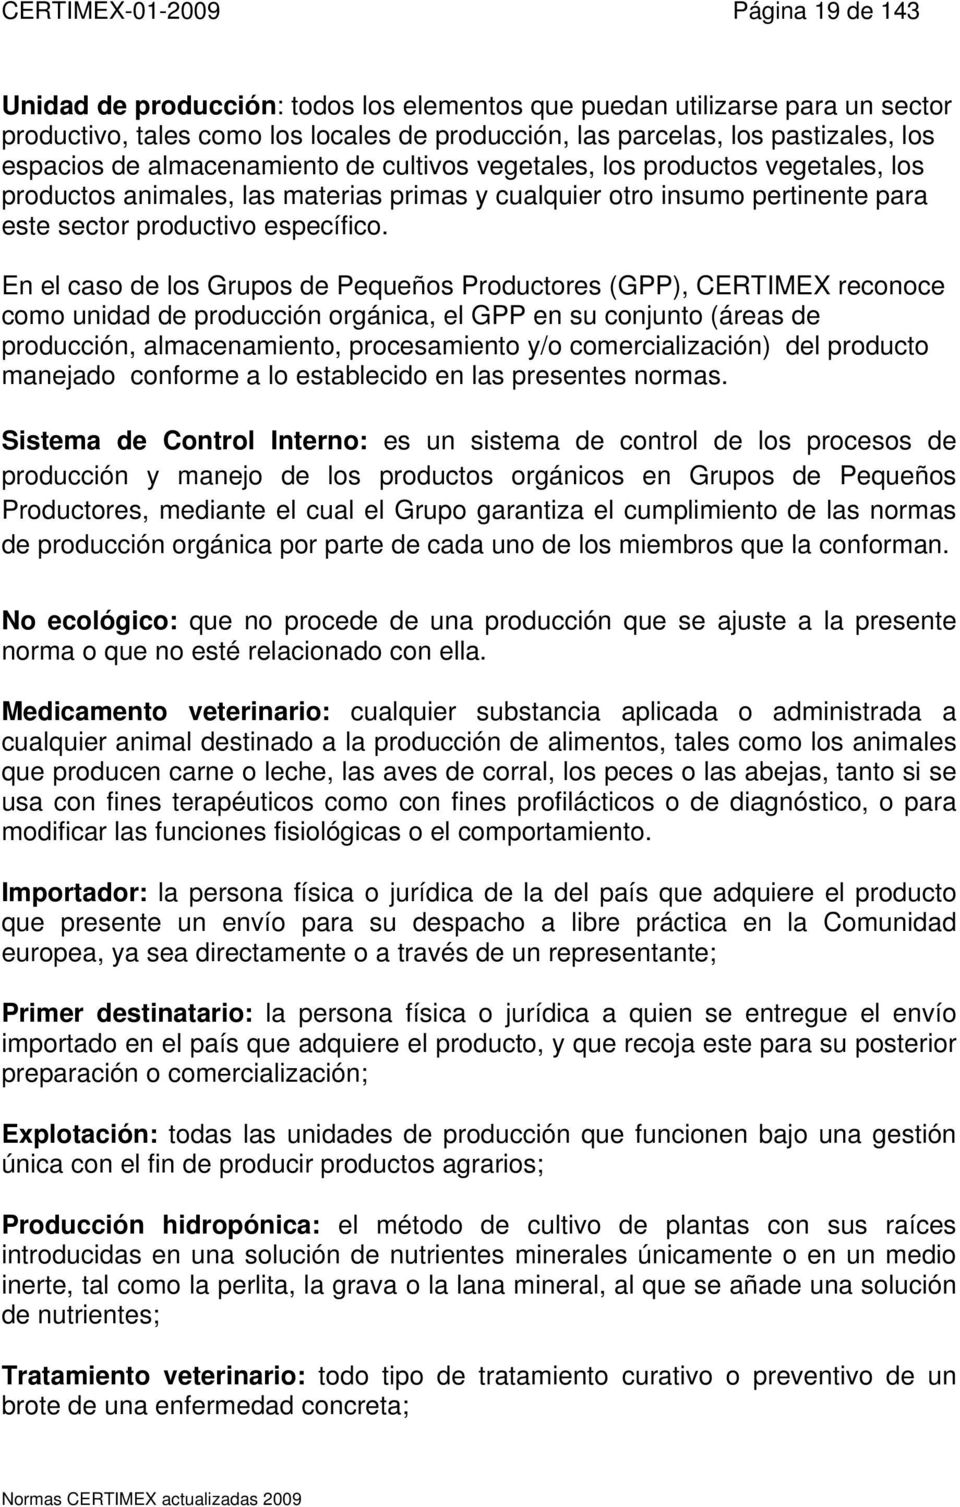 En el caso de los Grupos de Pequeños Productores (GPP), CERTIMEX reconoce como unidad de producción orgánica, el GPP en su conjunto (áreas de producción, almacenamiento, procesamiento y/o